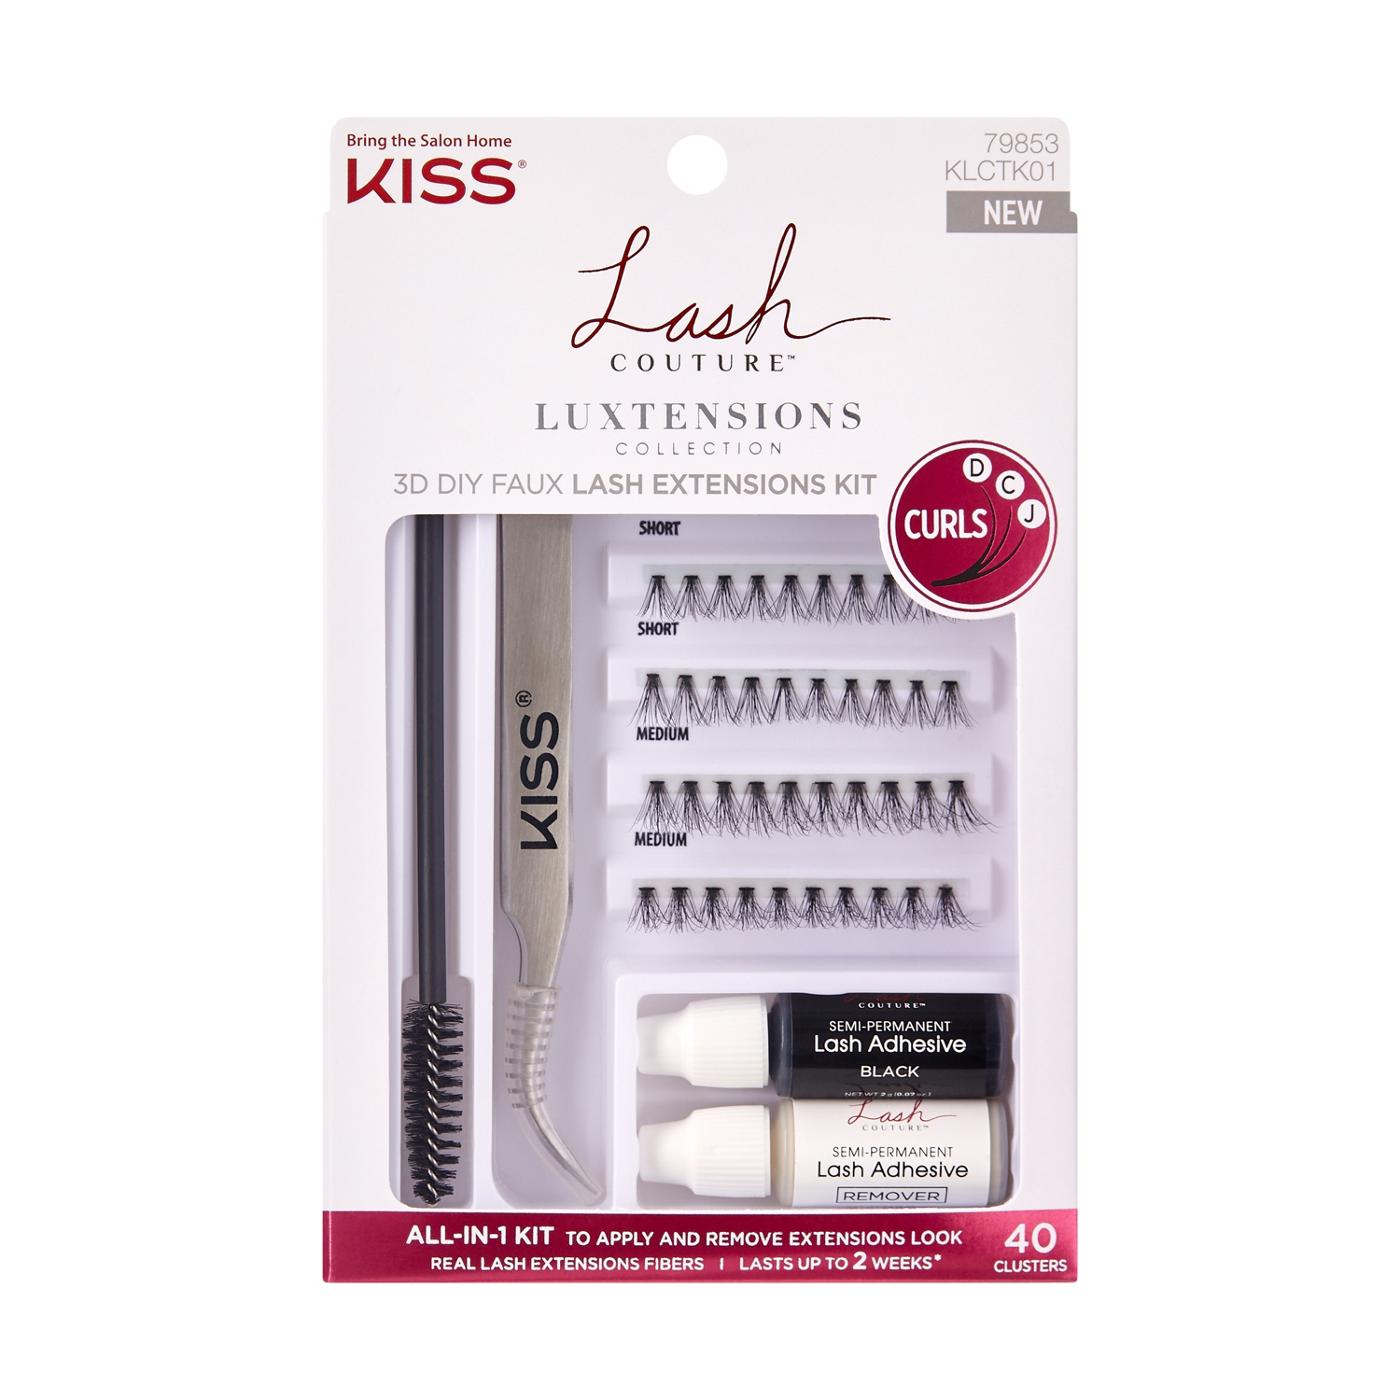 KISS Lash Couture 3D DIY Faux Lash Extensions Kit; image 1 of 5